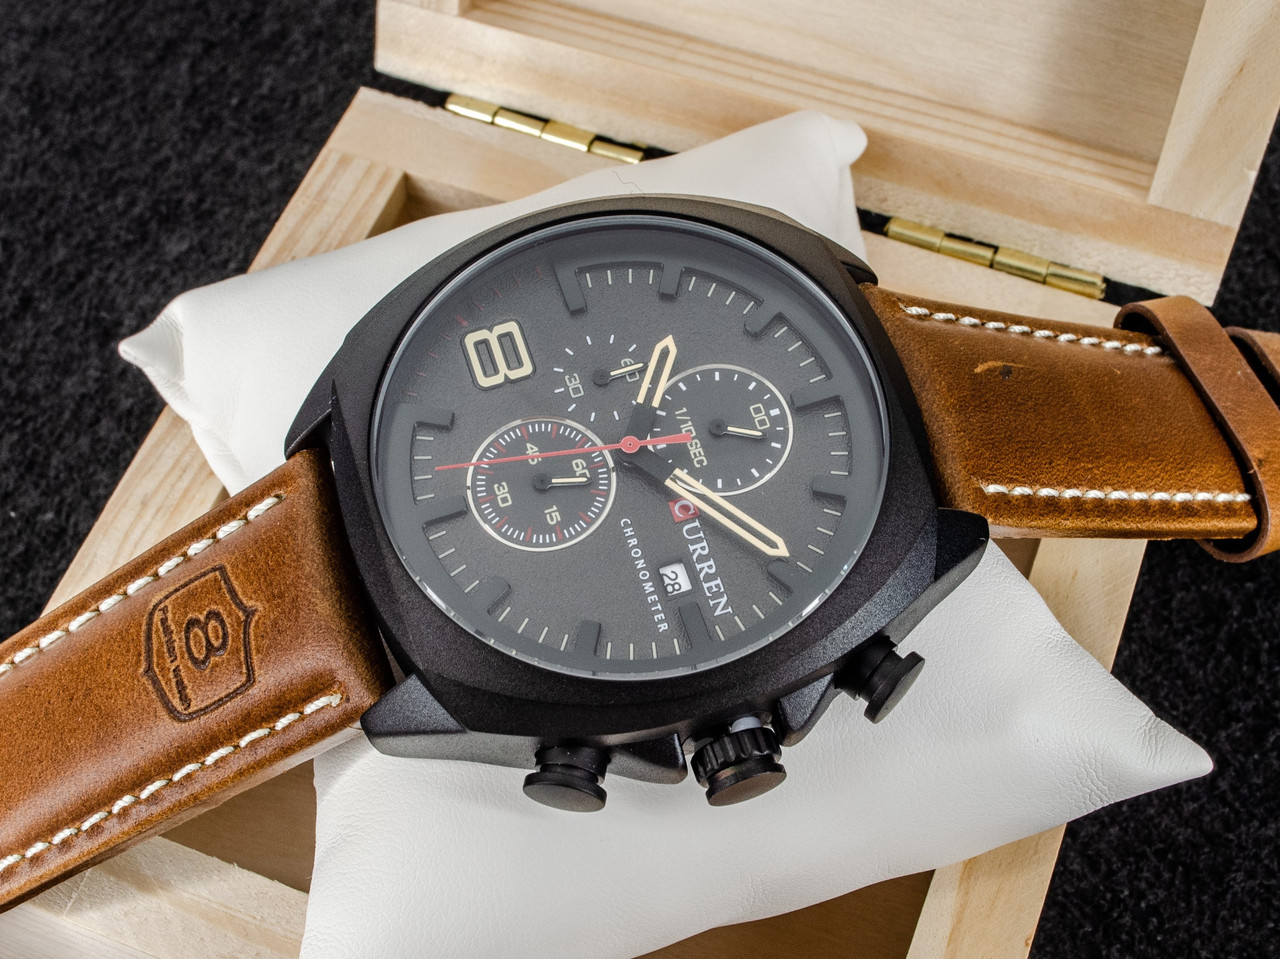 Чоловічий класичний кварцевий стрілочний наручний годинник з хронографом Curren 8324. Зі шкіряним ремінцем. BBrown